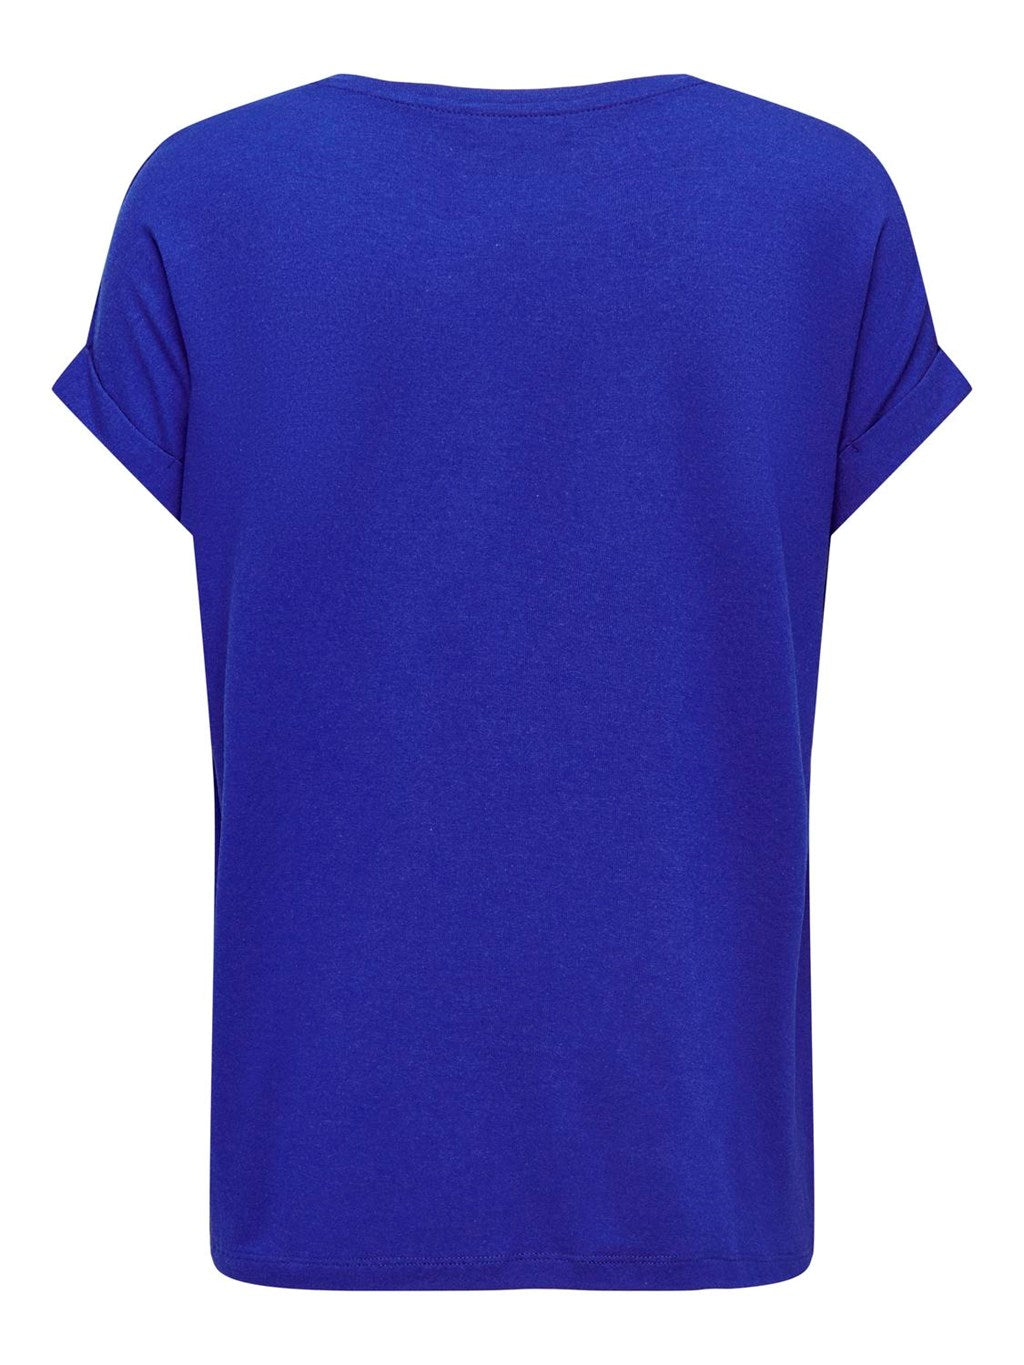 T-shirt bleu électrique Only pour femme